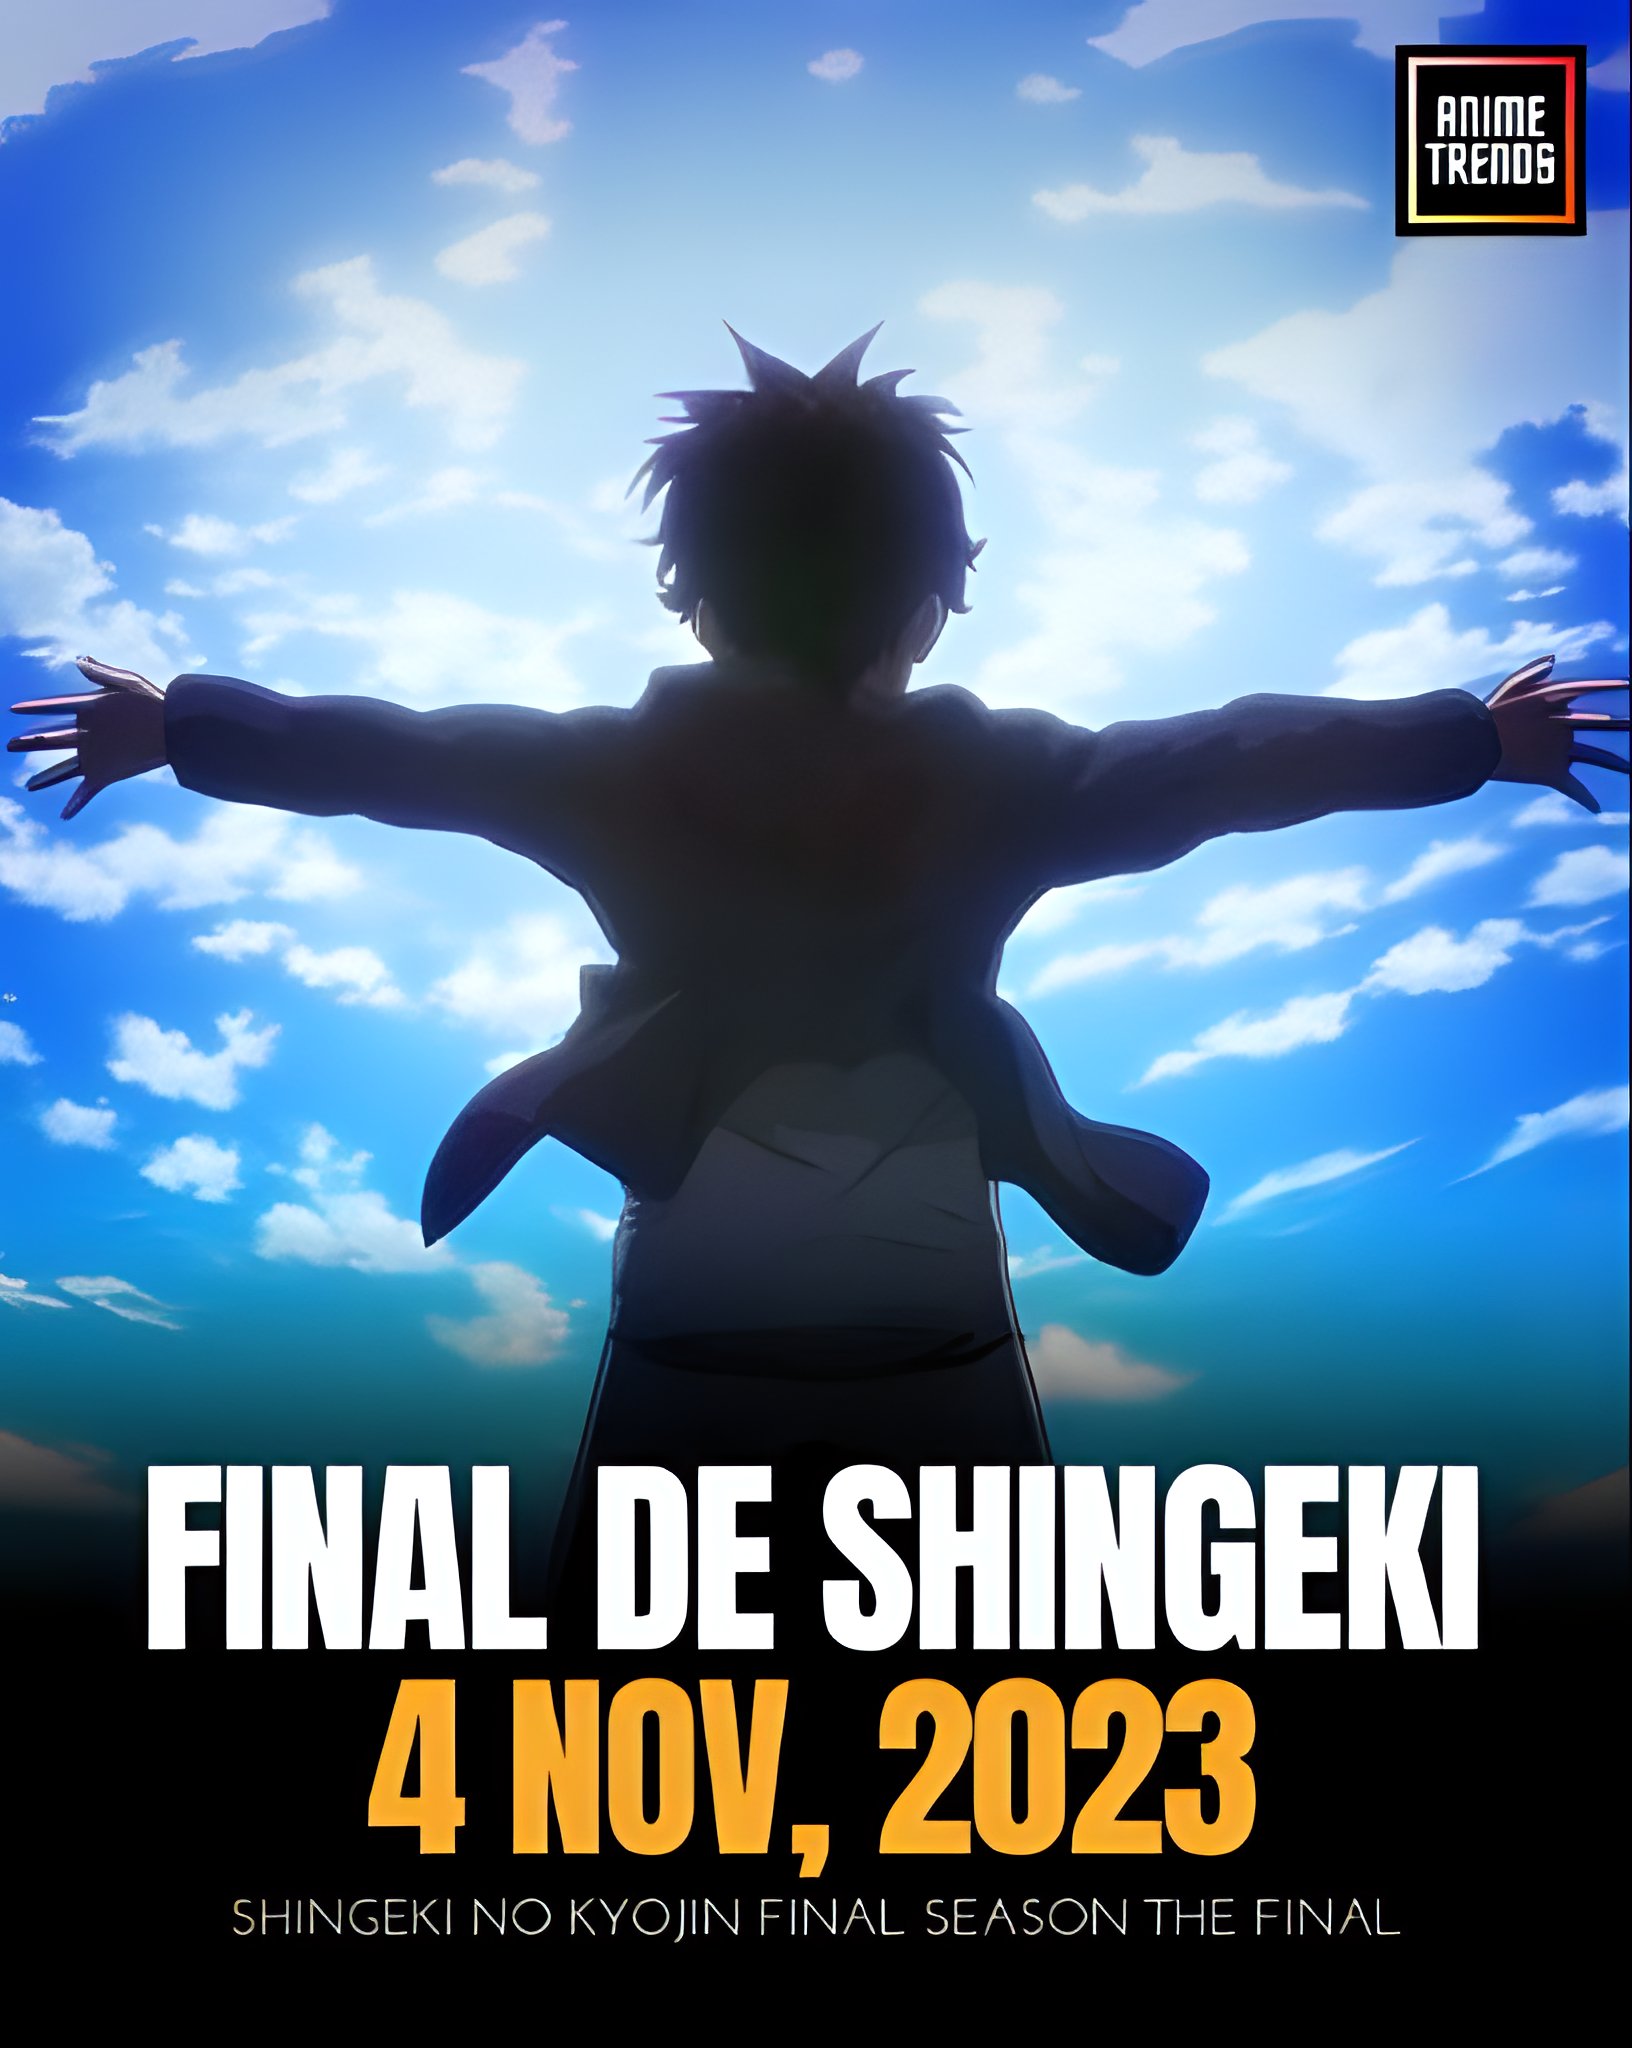 Shingeki no Kyojin - The Last Season March 4, 2023 : r/SpotifyPlaylists